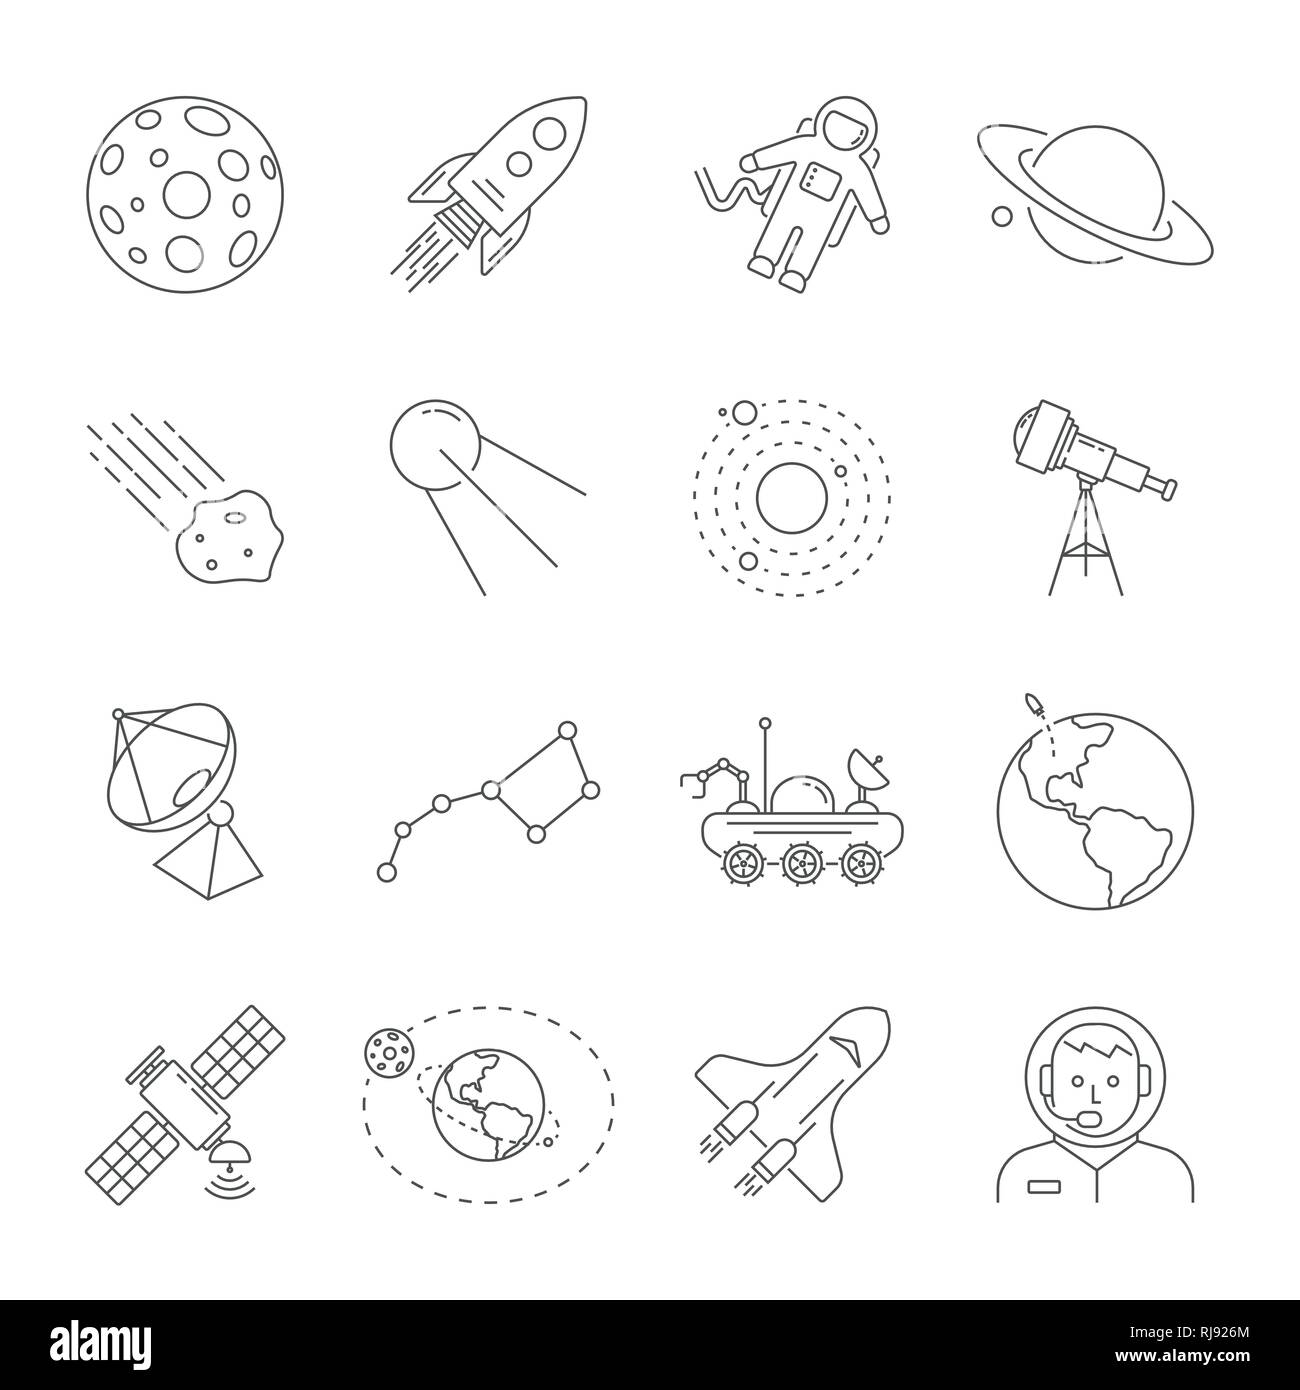 Astronomia e spazio di raccolta dei simboli. Linea sottile icone del tema dello spazio. Contiene le icone come Luna e Saturno, Terra, satellite, telescopio solare, Illustrazione Vettoriale